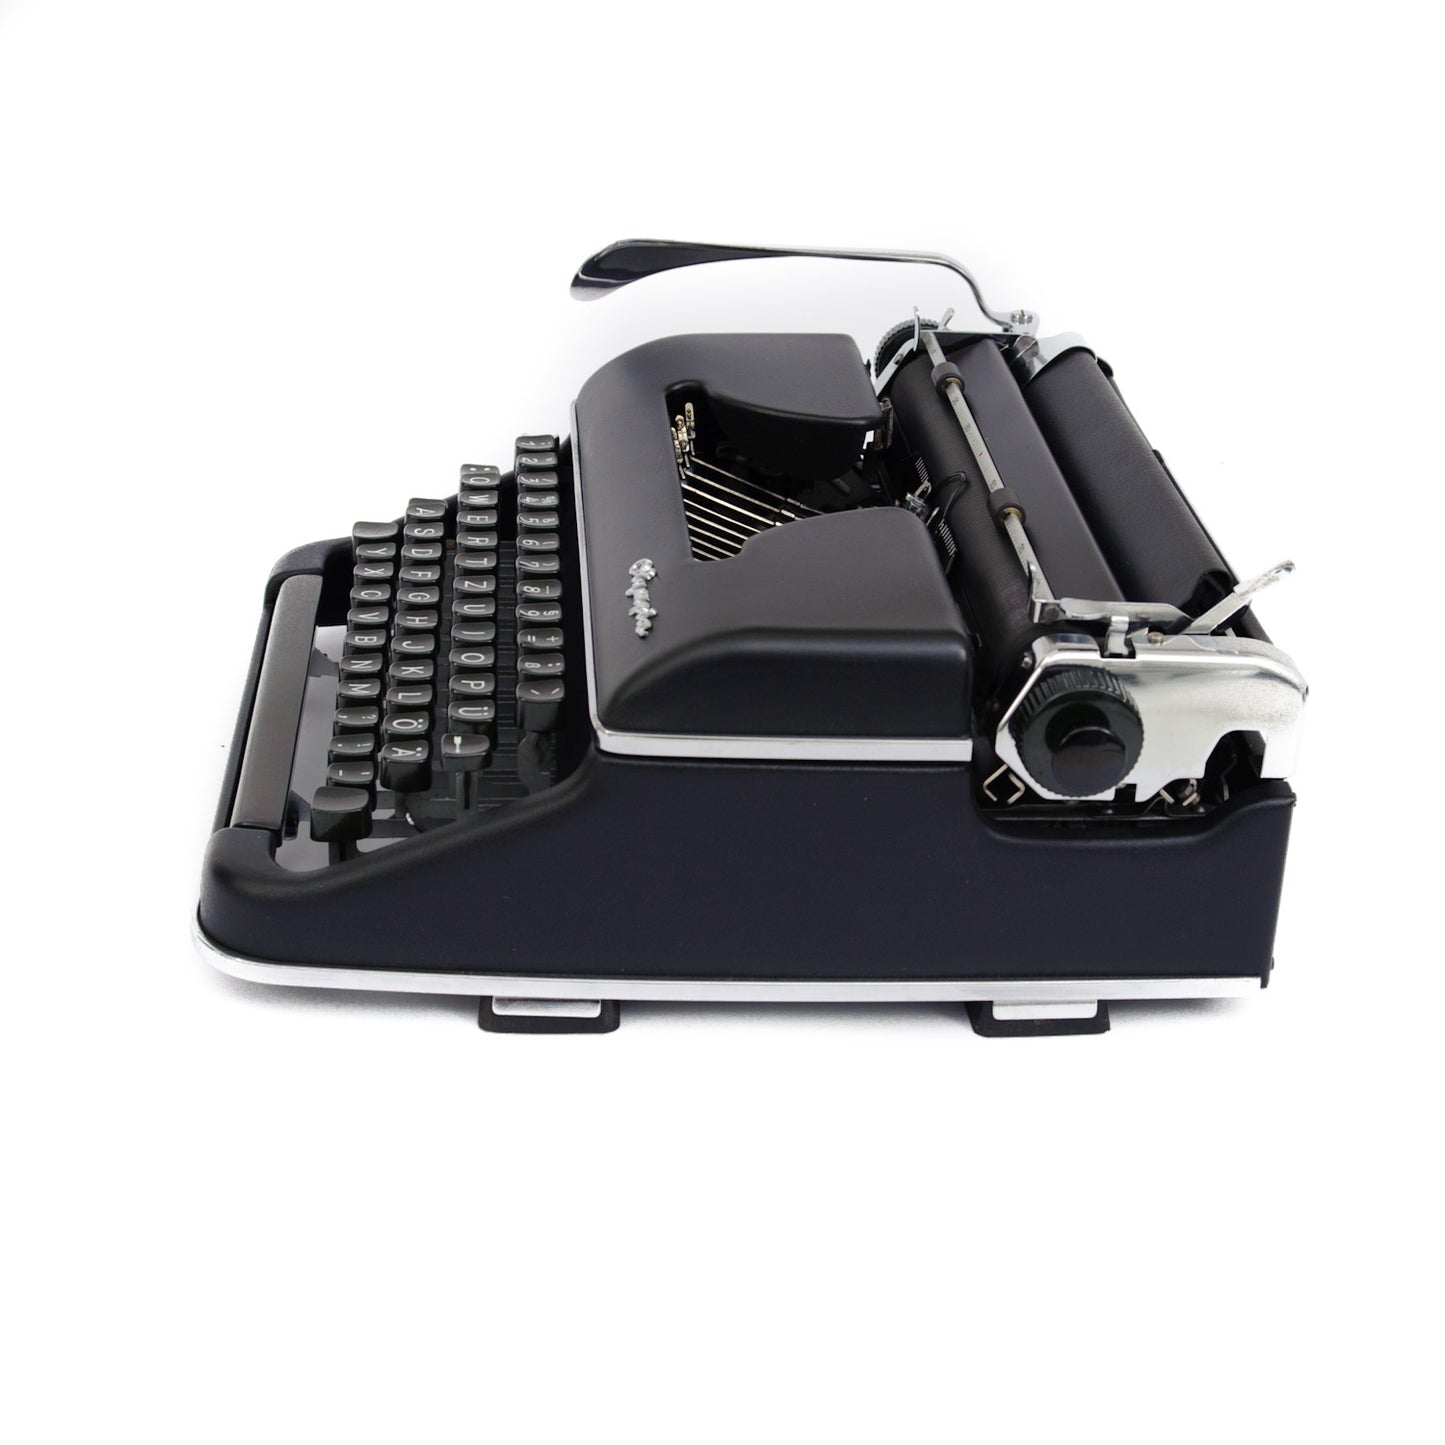 Black Typewriter Olympia SM2